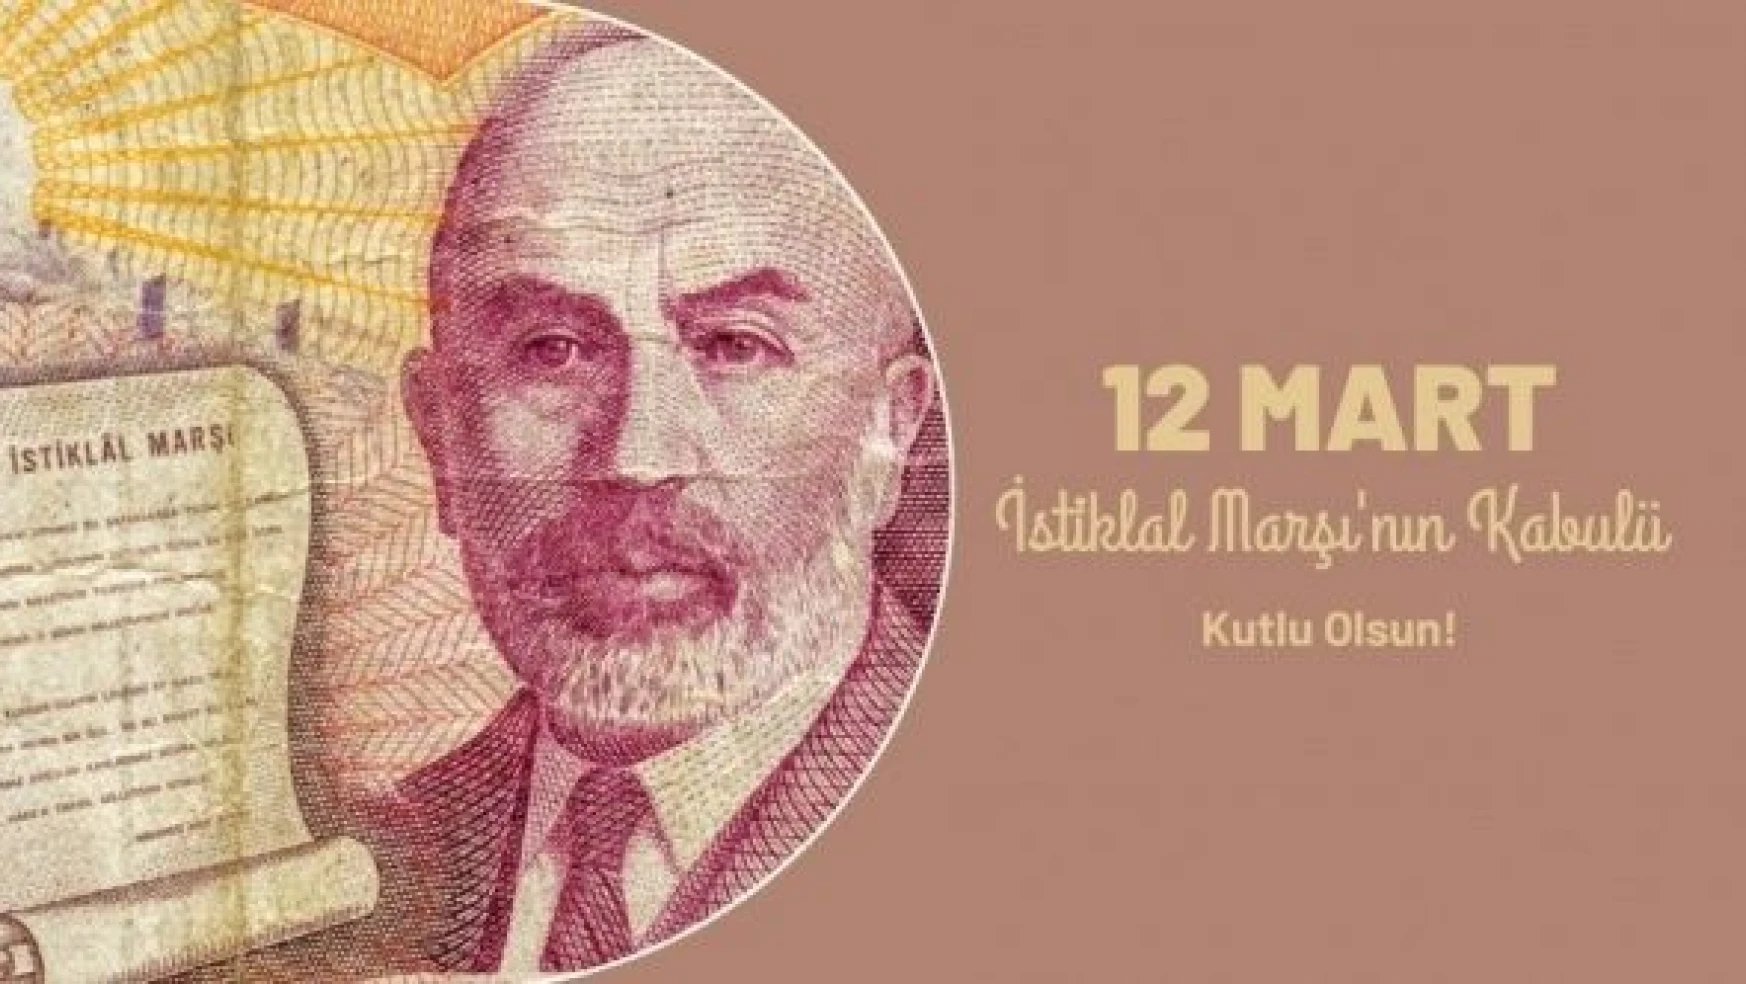 Doğu'da ''12 Mart İstiklal Marşı'nın Kabulü ve Mehmet Akif Ersoy'u Anma Günü'' etkinlikleri